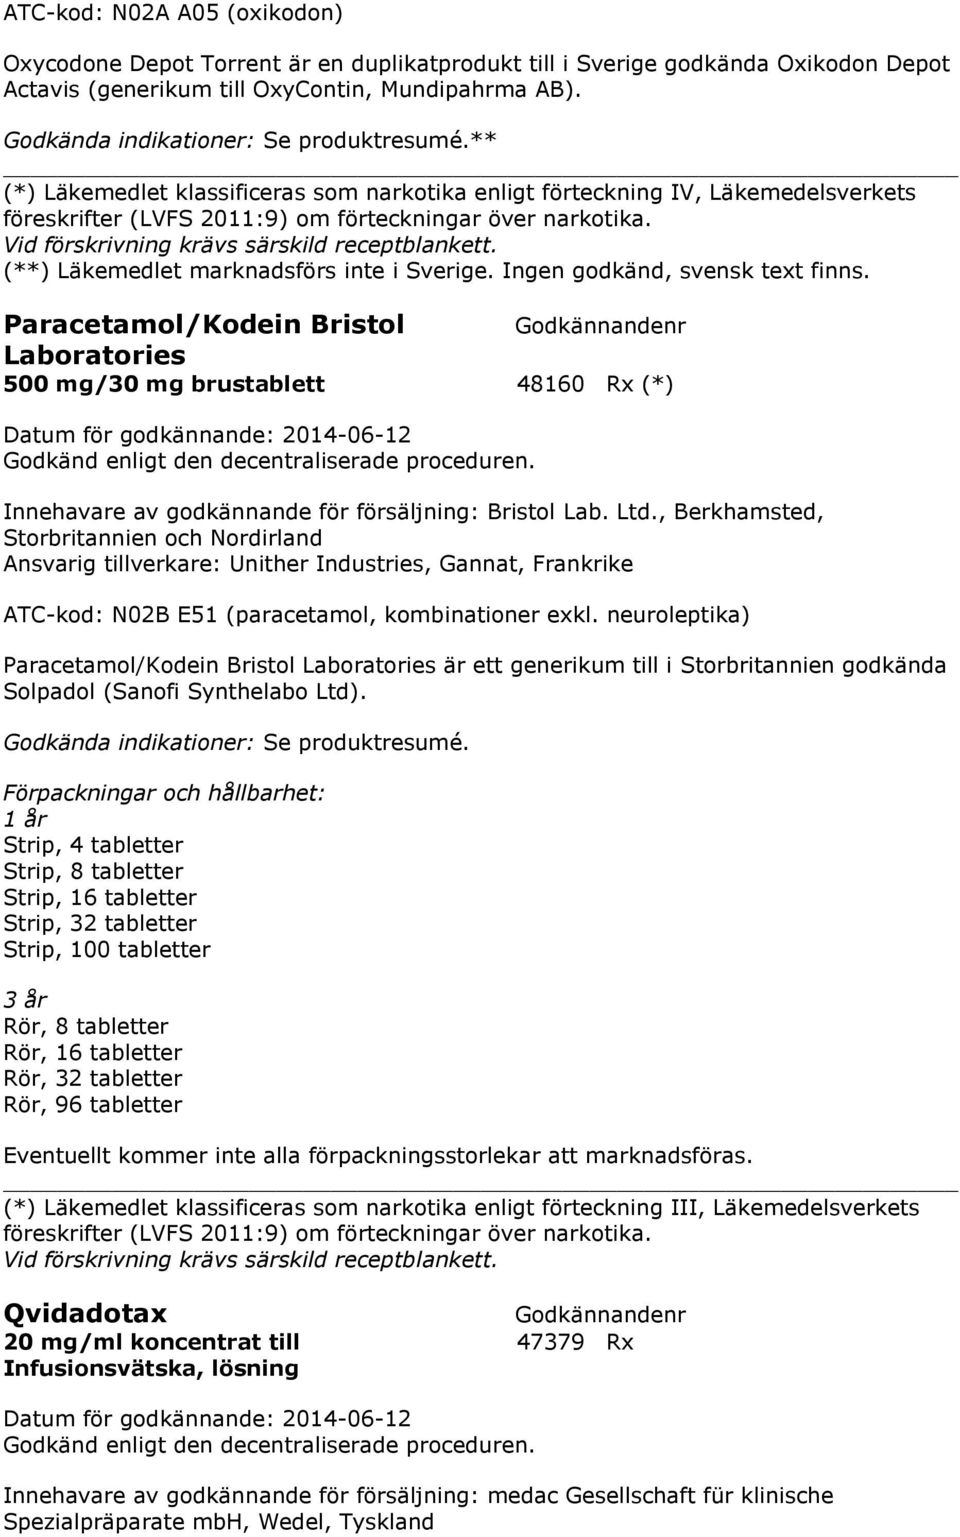 Vid förskrivning krävs särskild receptblankett. (**) Läkemedlet marknadsförs inte i Sverige. Ingen godkänd, svensk text finns.